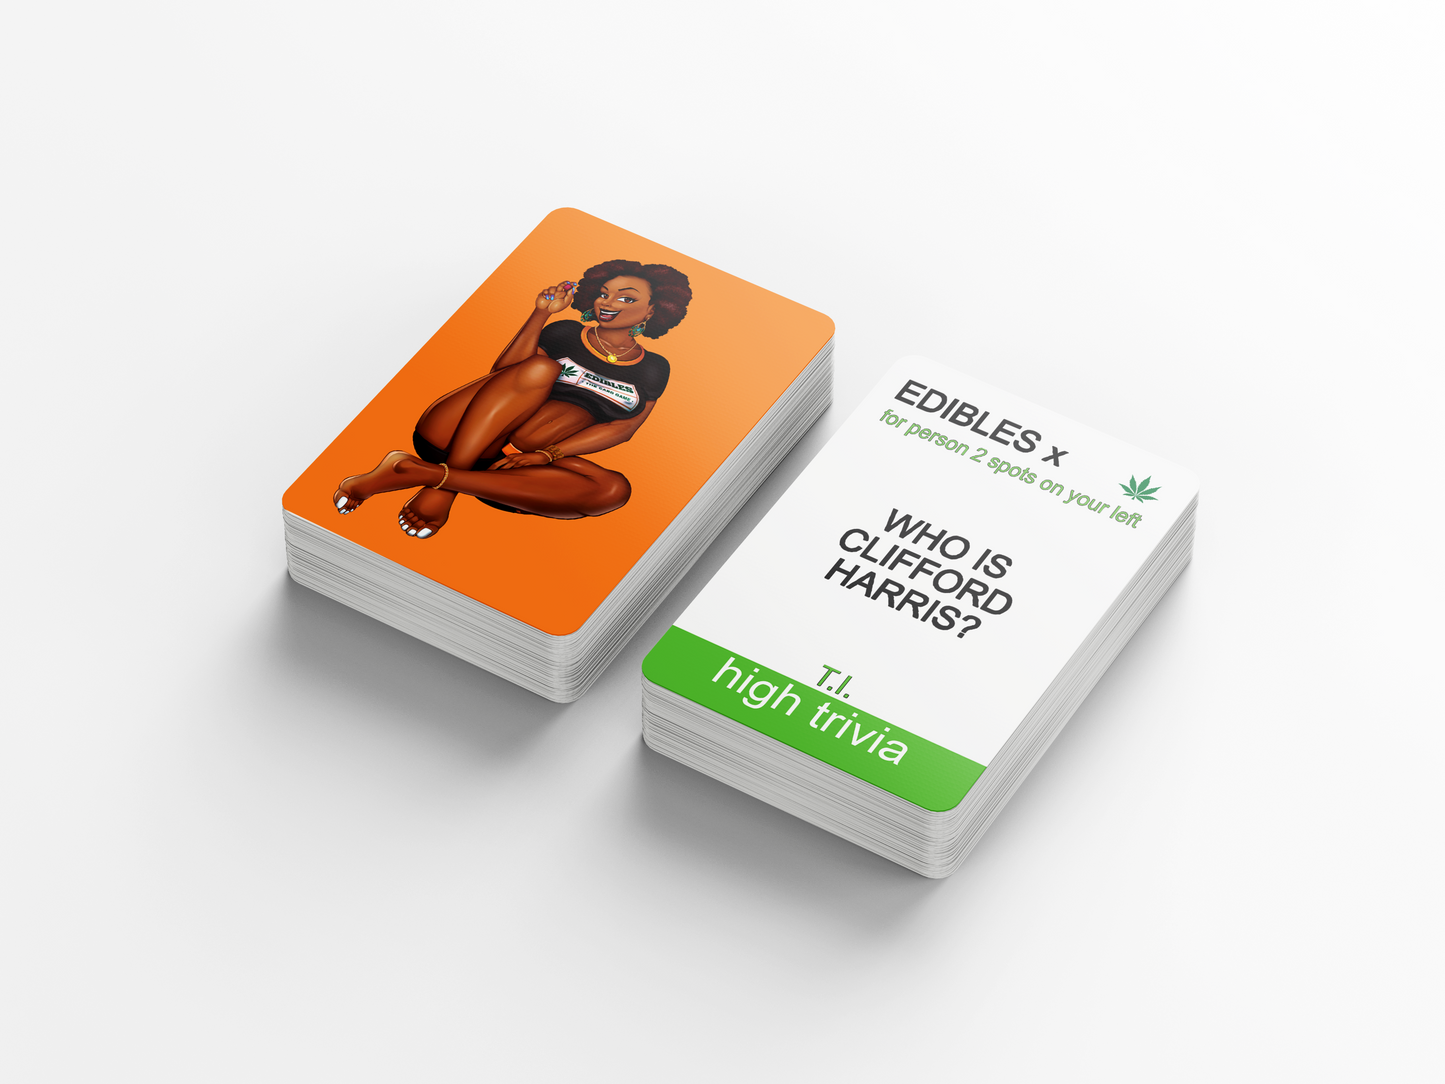 Edibles - Adult Weed, Cannabis & Marijuana Card Game